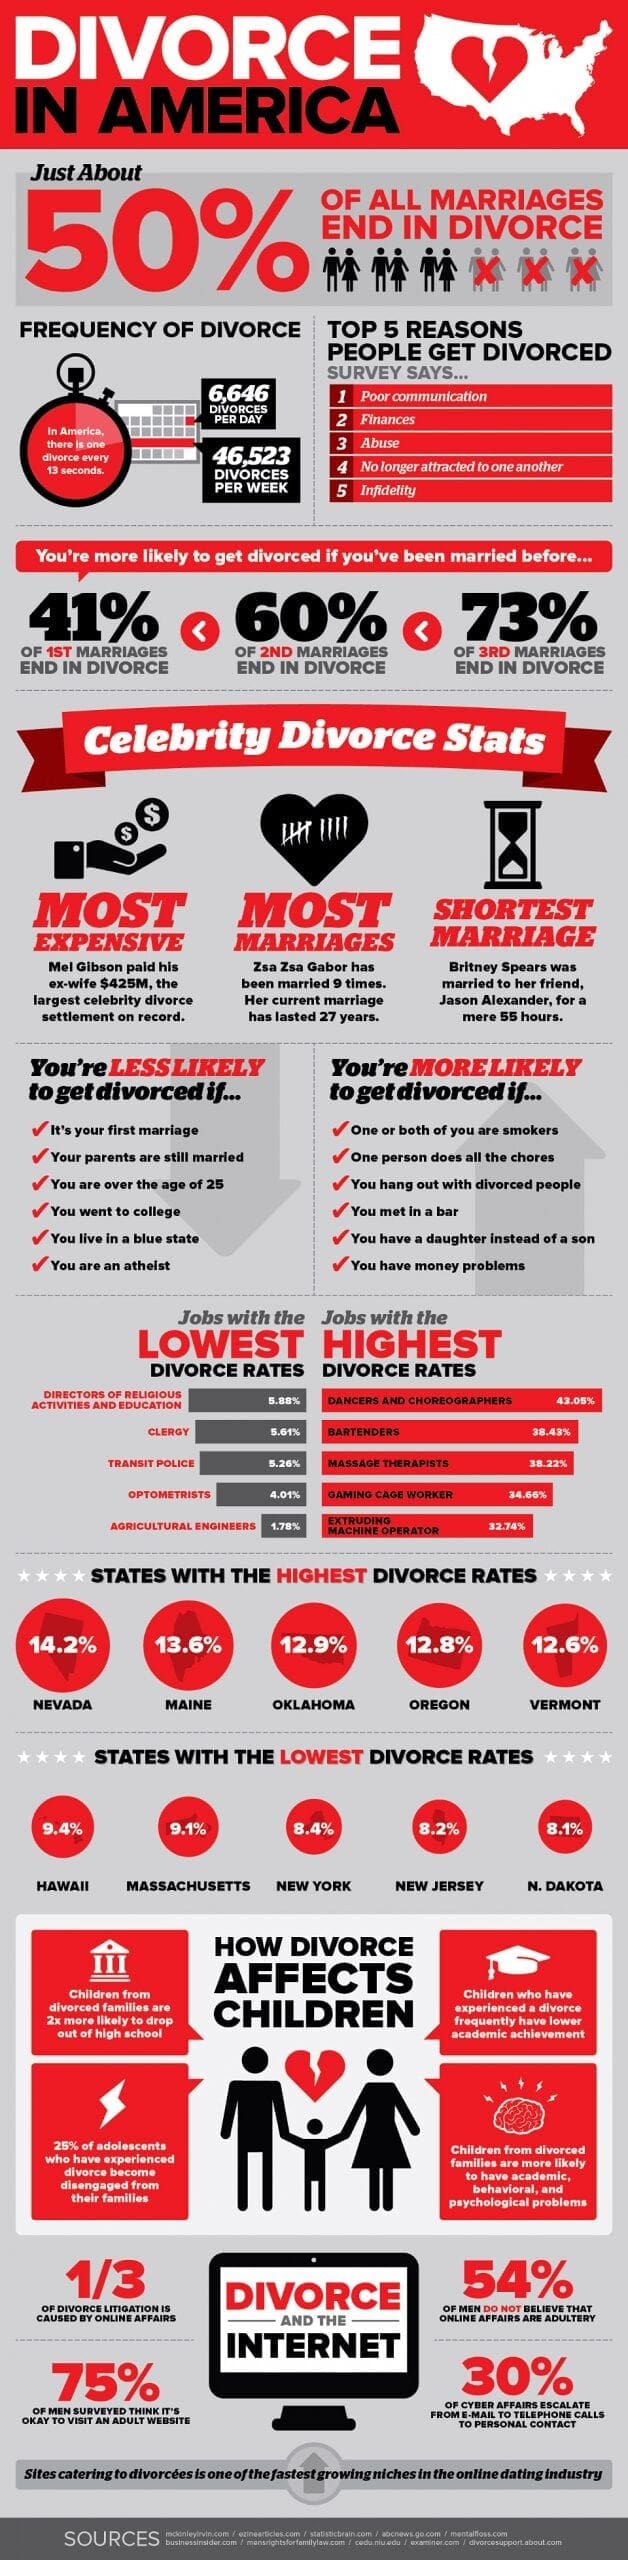 divorce in america